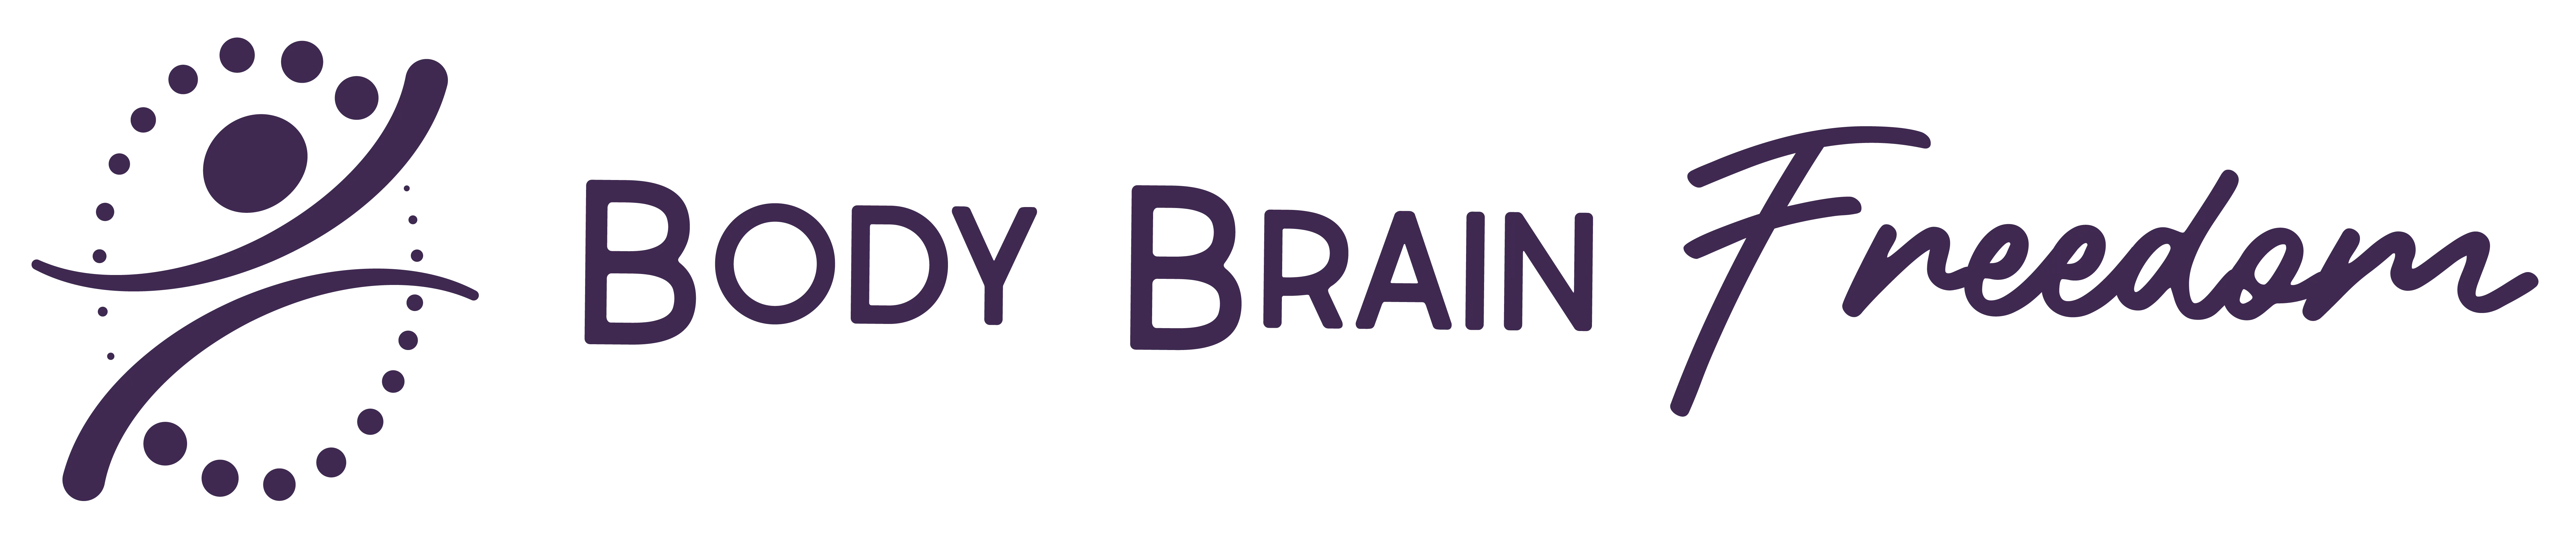 Body Brain Freedom logo